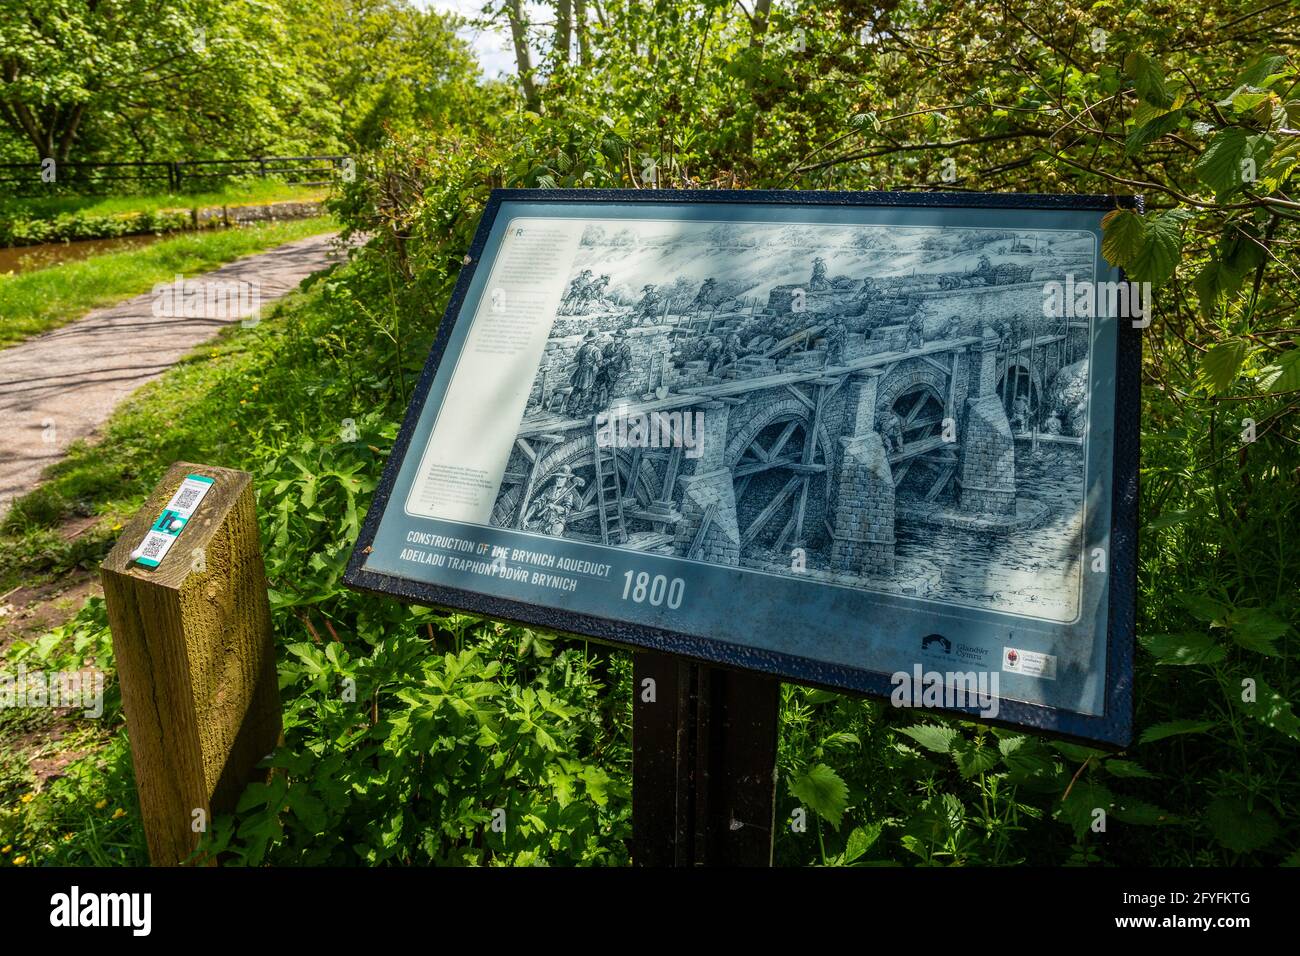 Informationboard, das den Bau des Aquädukts Brynich in der Nähe von Brecon am Monmouthshire und am Brecon Canal in Powys, Wales, Großbritannien, beschreibt Stockfoto